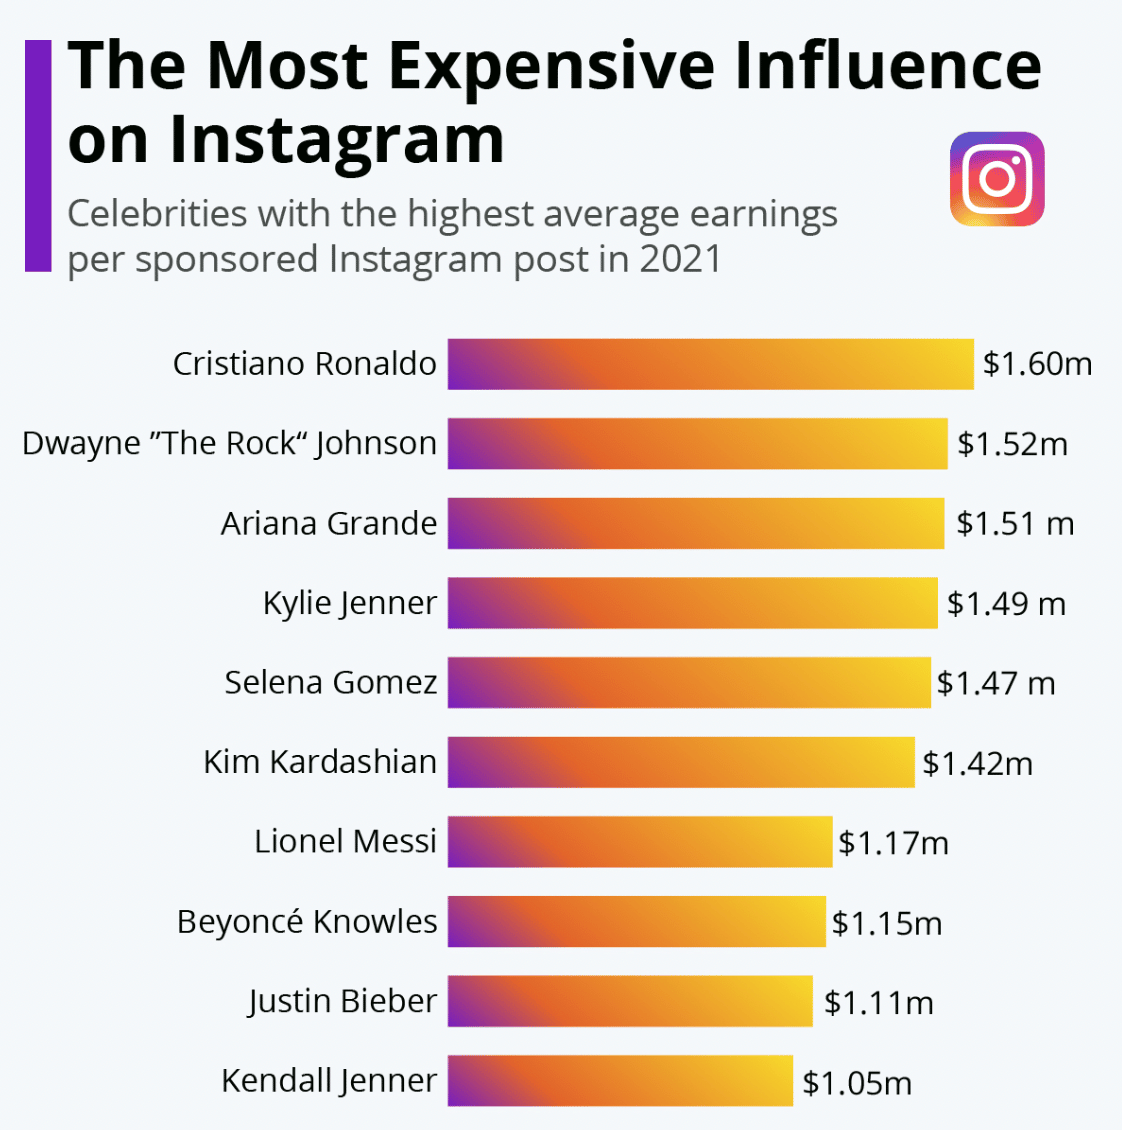 la influencia más cara en el gráfico de Instagram